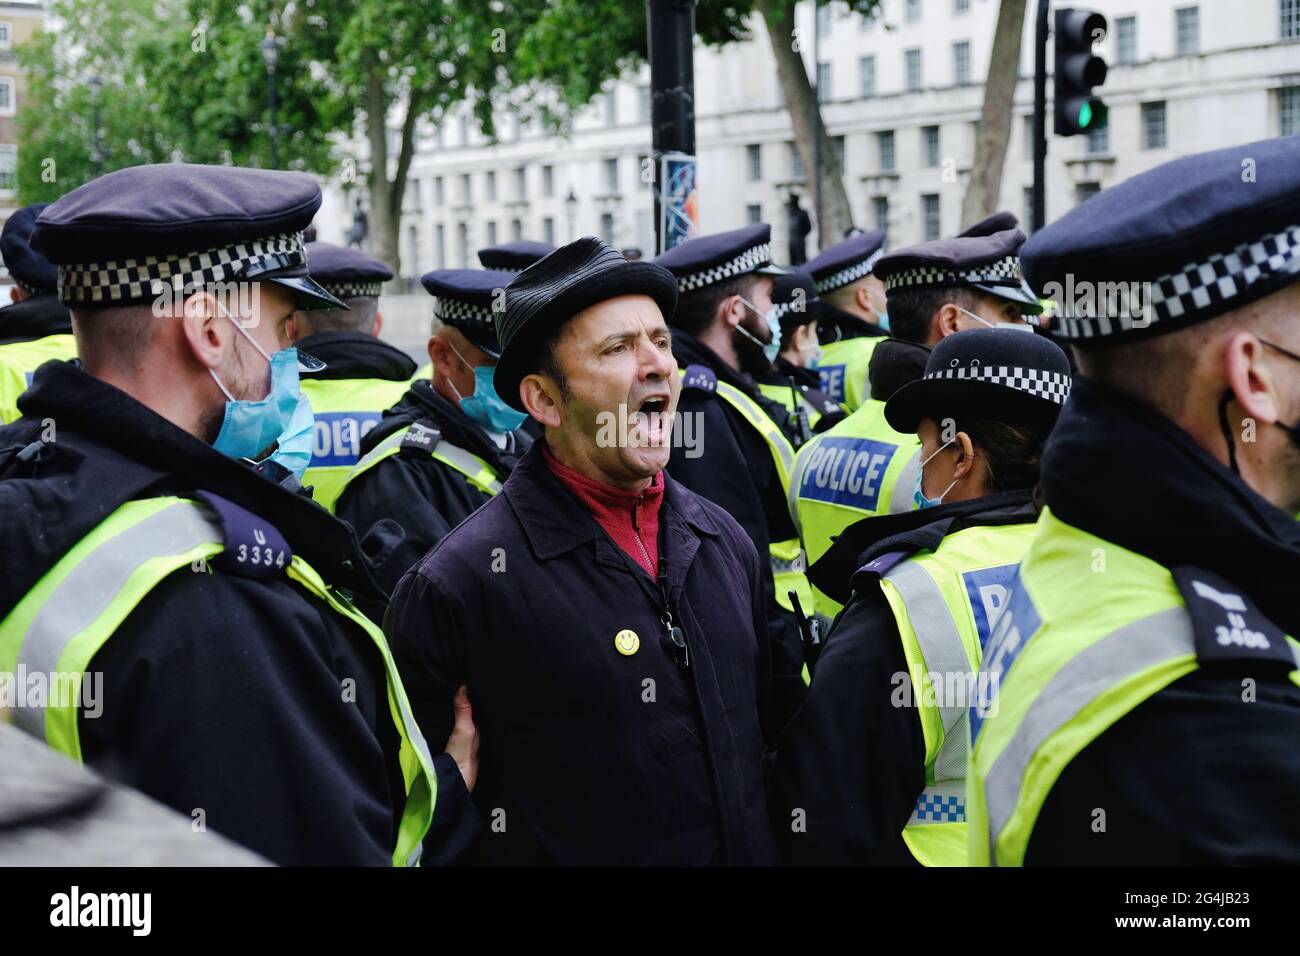 Un manifestant anti-verrouillage chante alors qu'il est arrêté par la police près de Downing Street. Une démonstration a été appelée alors que la phase de verrouillage 4 est retardée Banque D'Images